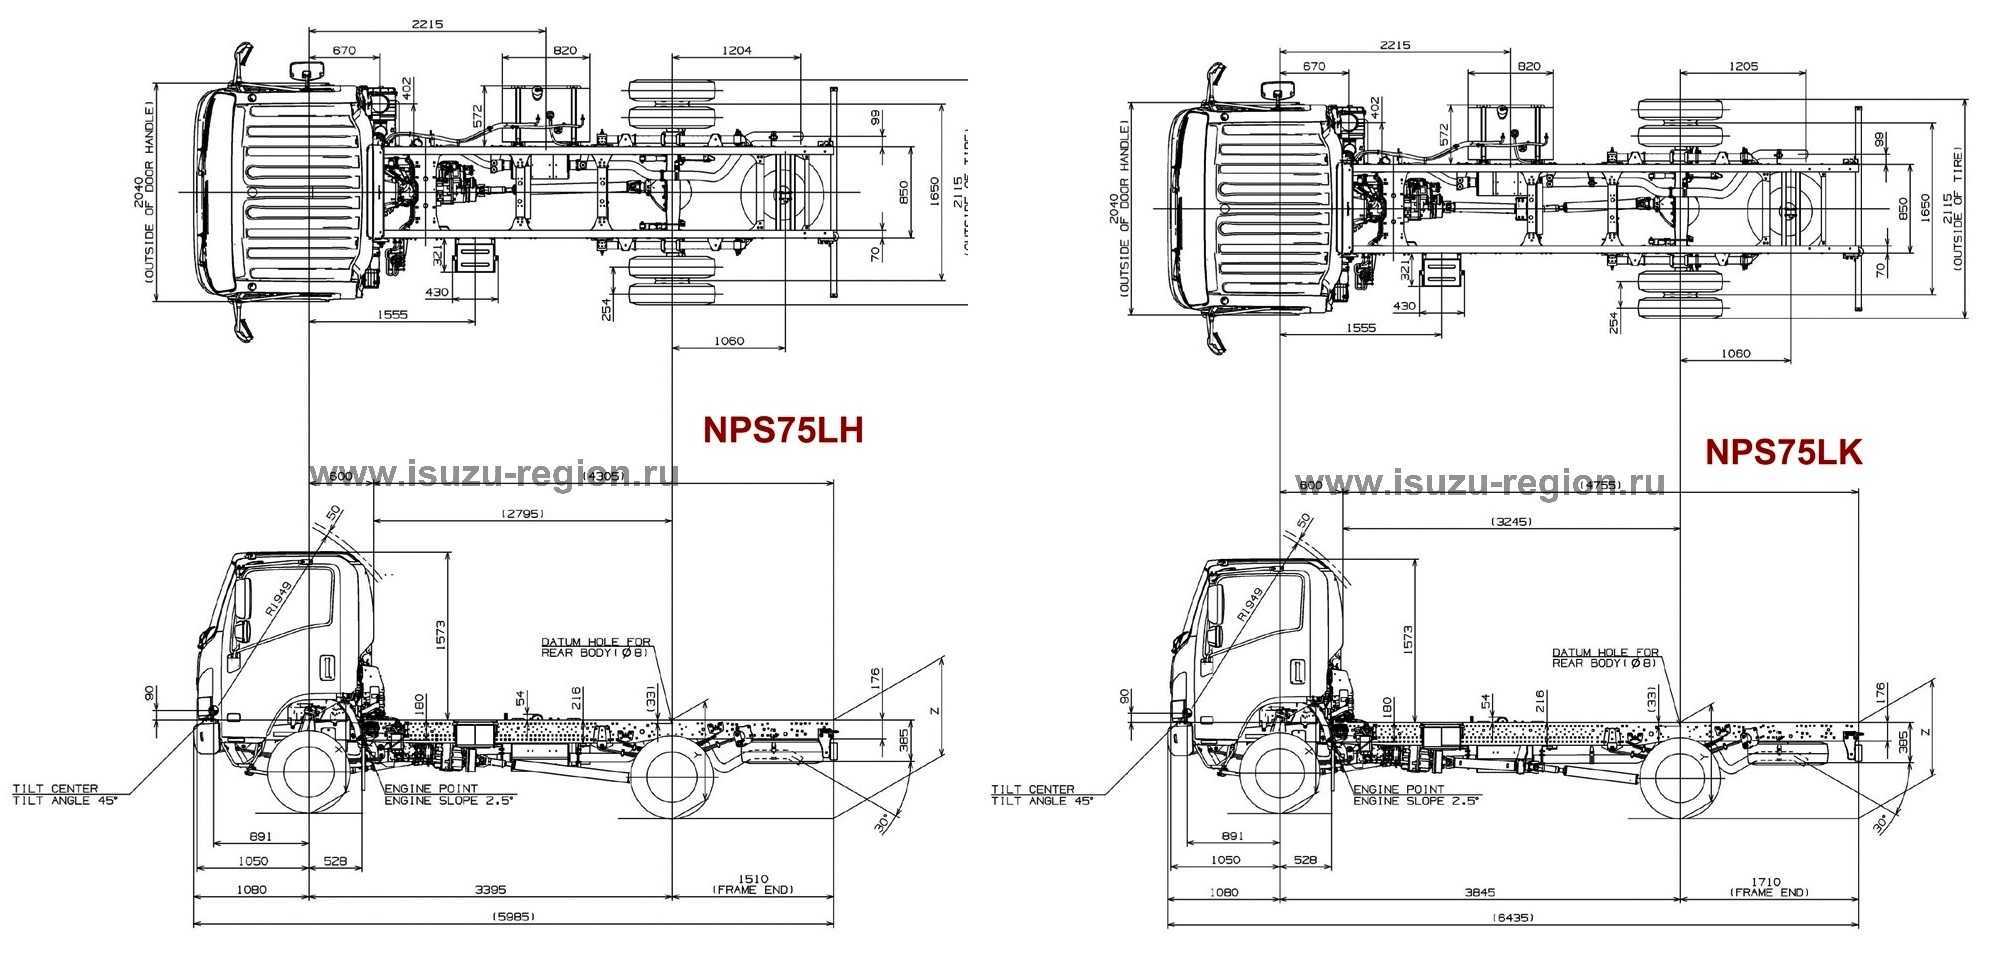 Перечень технических характеристик ISUZU ELF 55, их  и обзор с фото